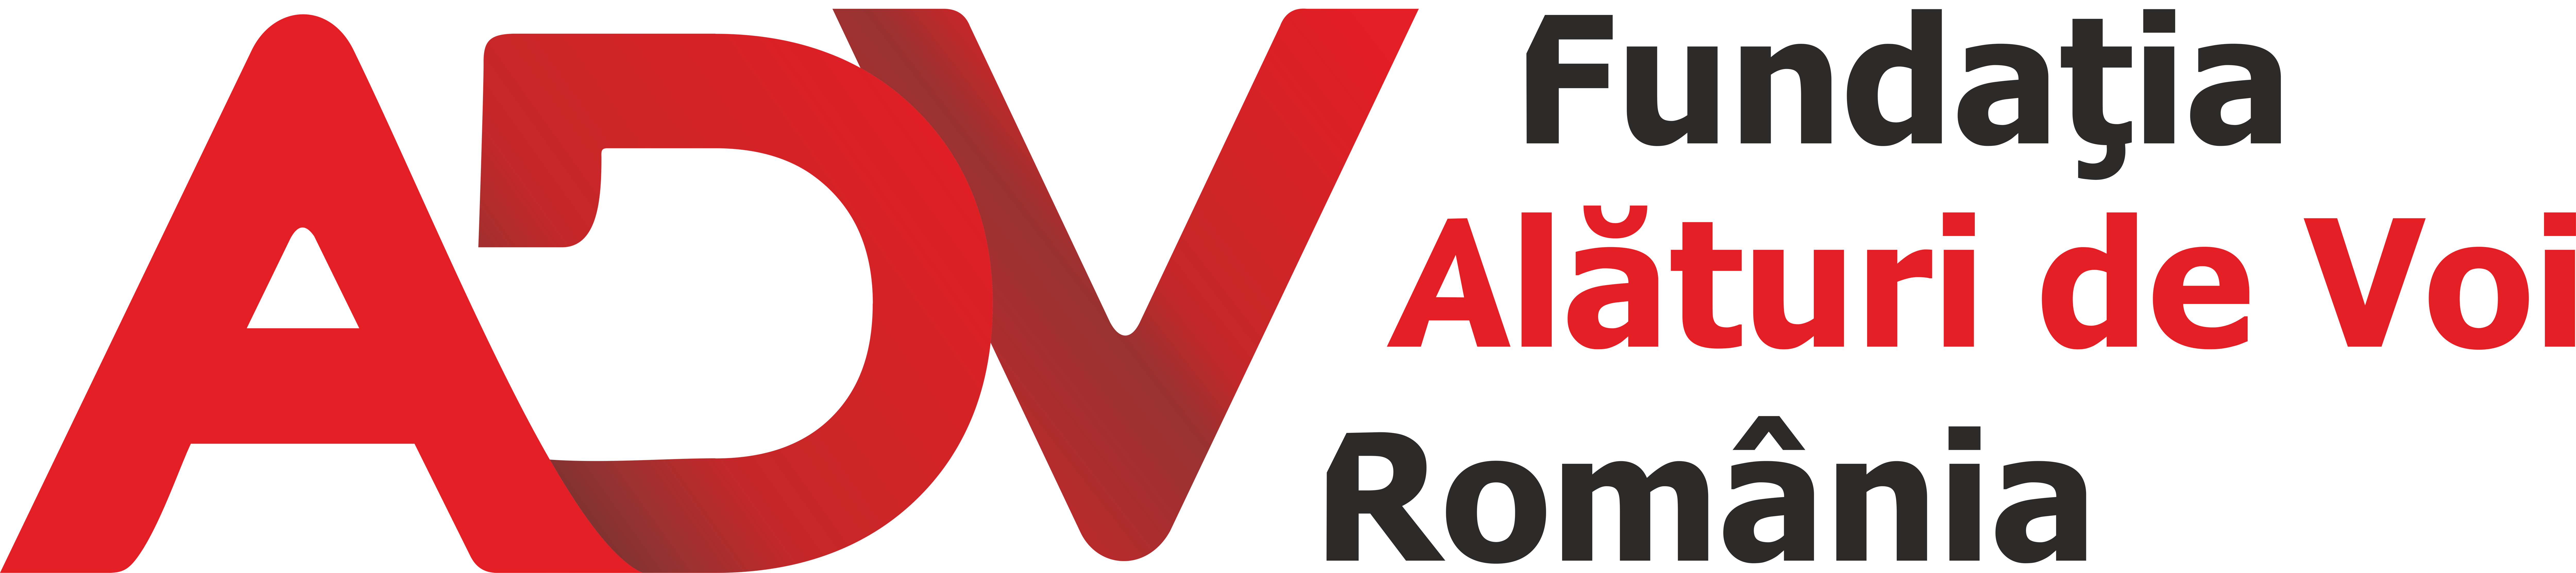 Fundatia Alaturi de Voi Romania logo